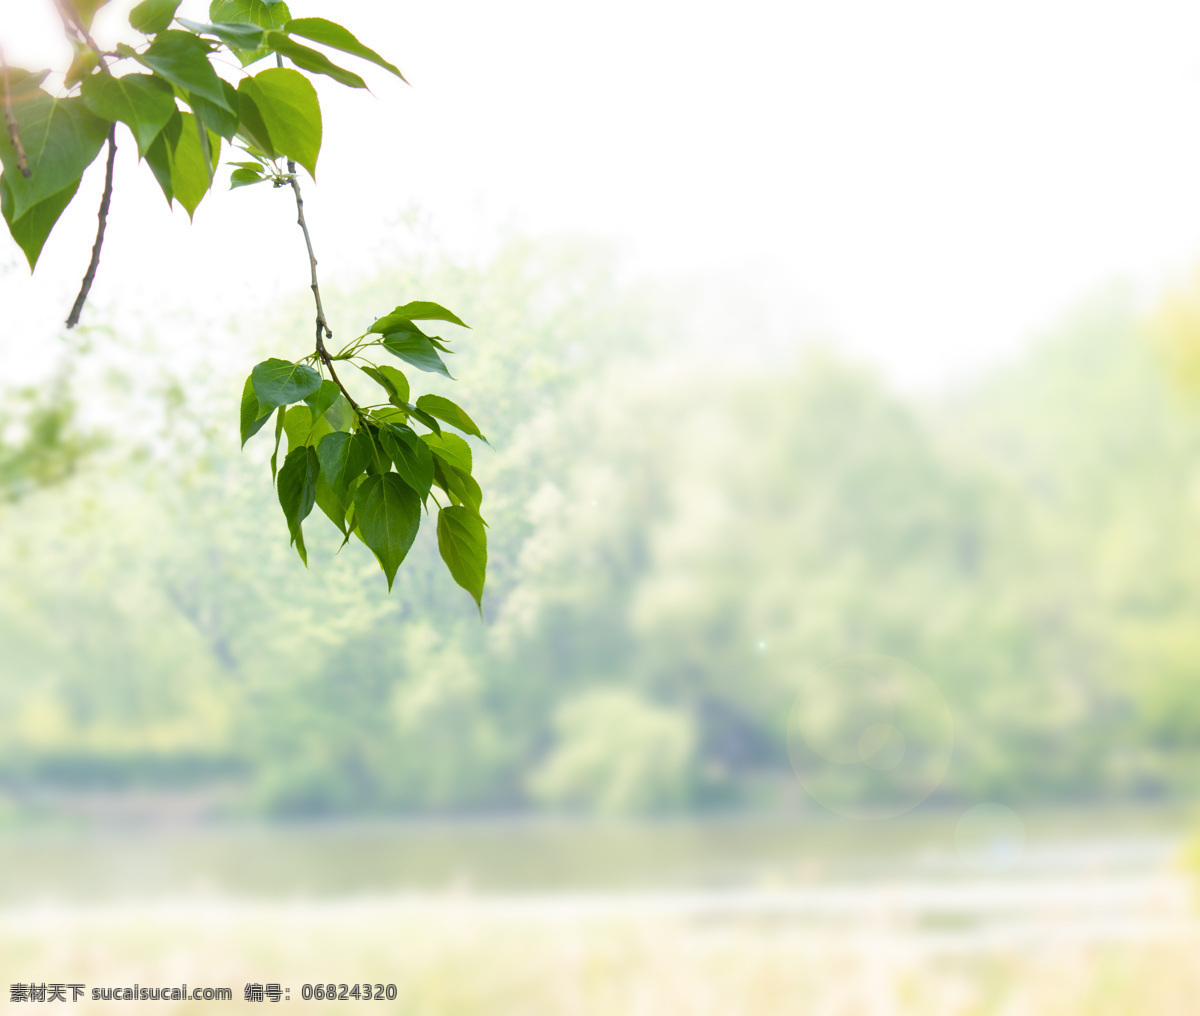 春天 绿色植物 叶子 河岸 高清 图 摄影图 自然景观 自然风景